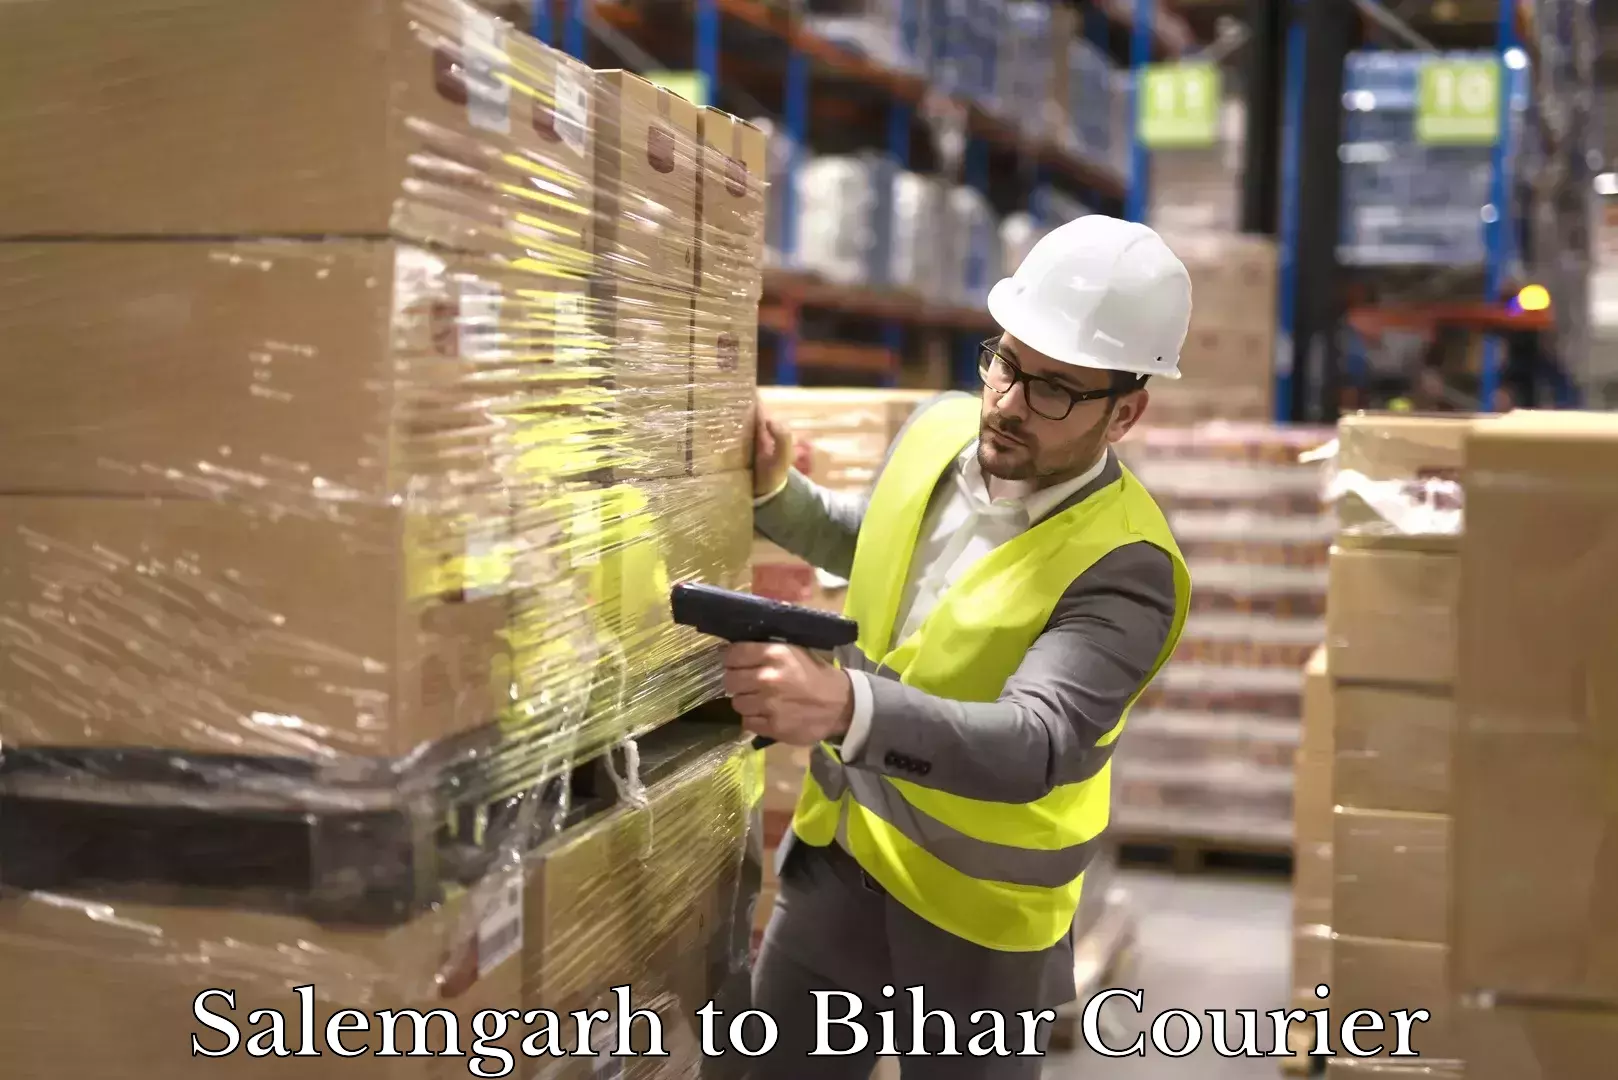 Efficient freight service Salemgarh to Bihar